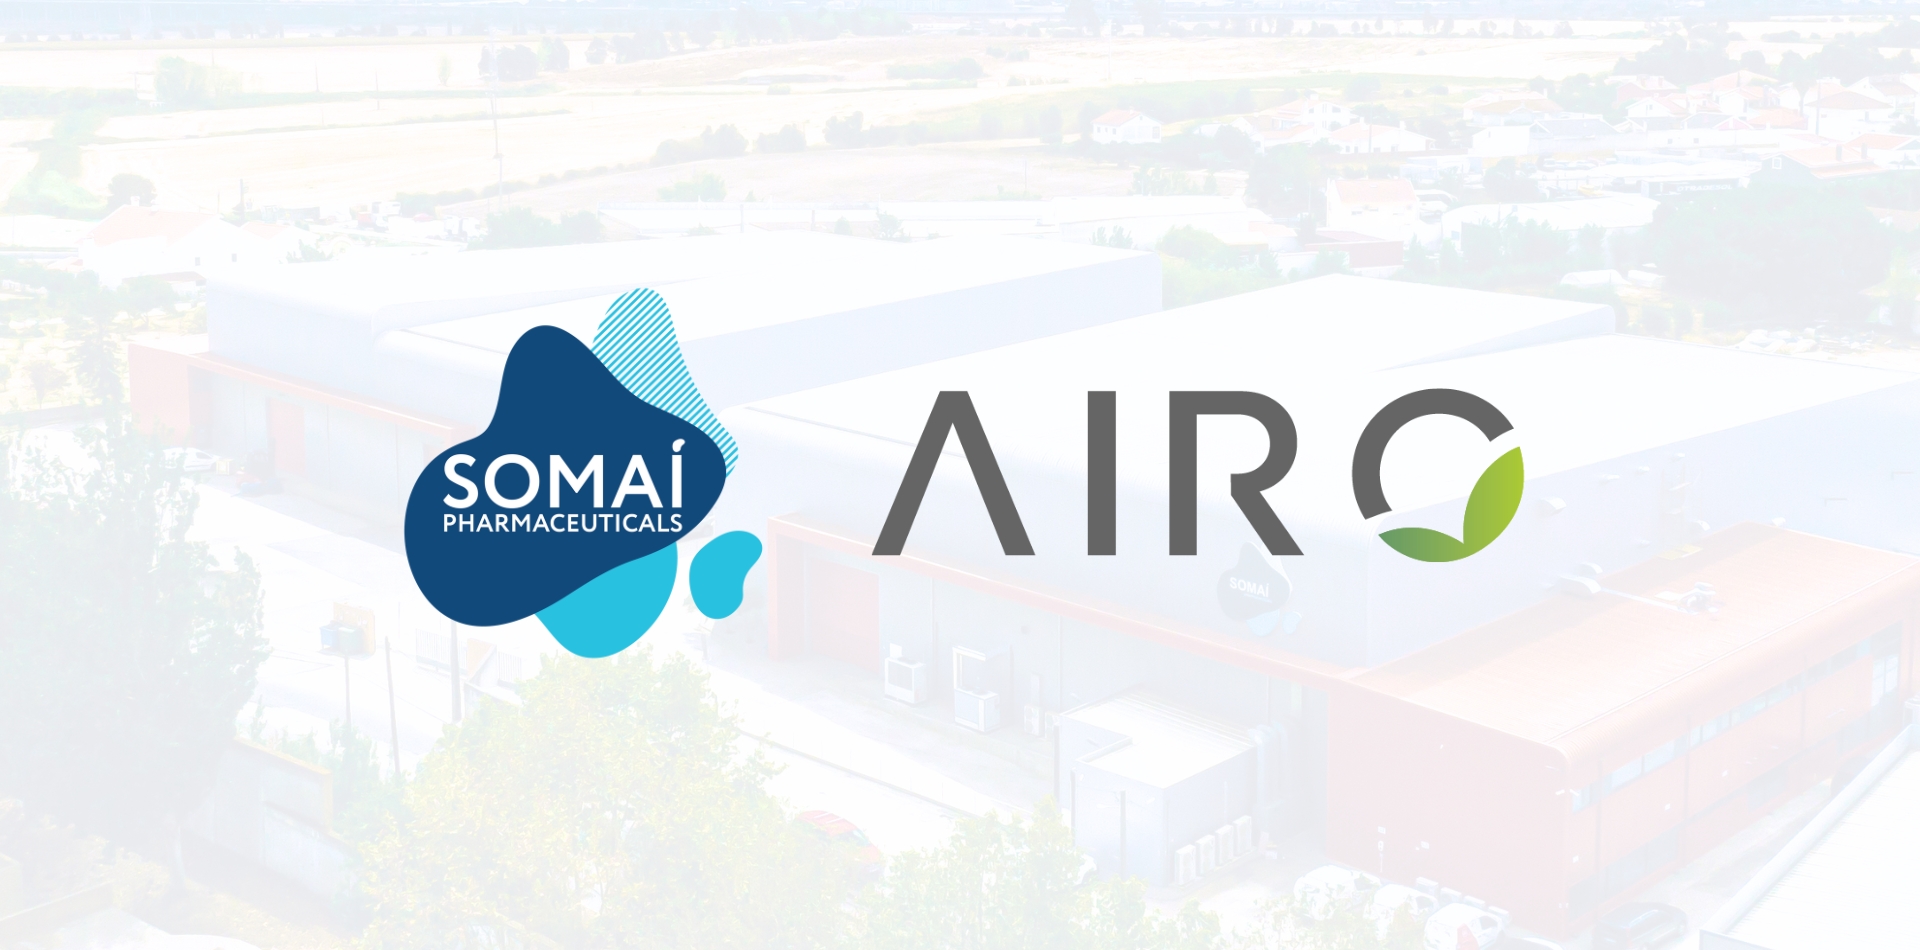 SOMAÍ Pharmaceuticals führt die in den USA preisgekrönte Marke Airo auf dem europäischen und australischen Markt ein